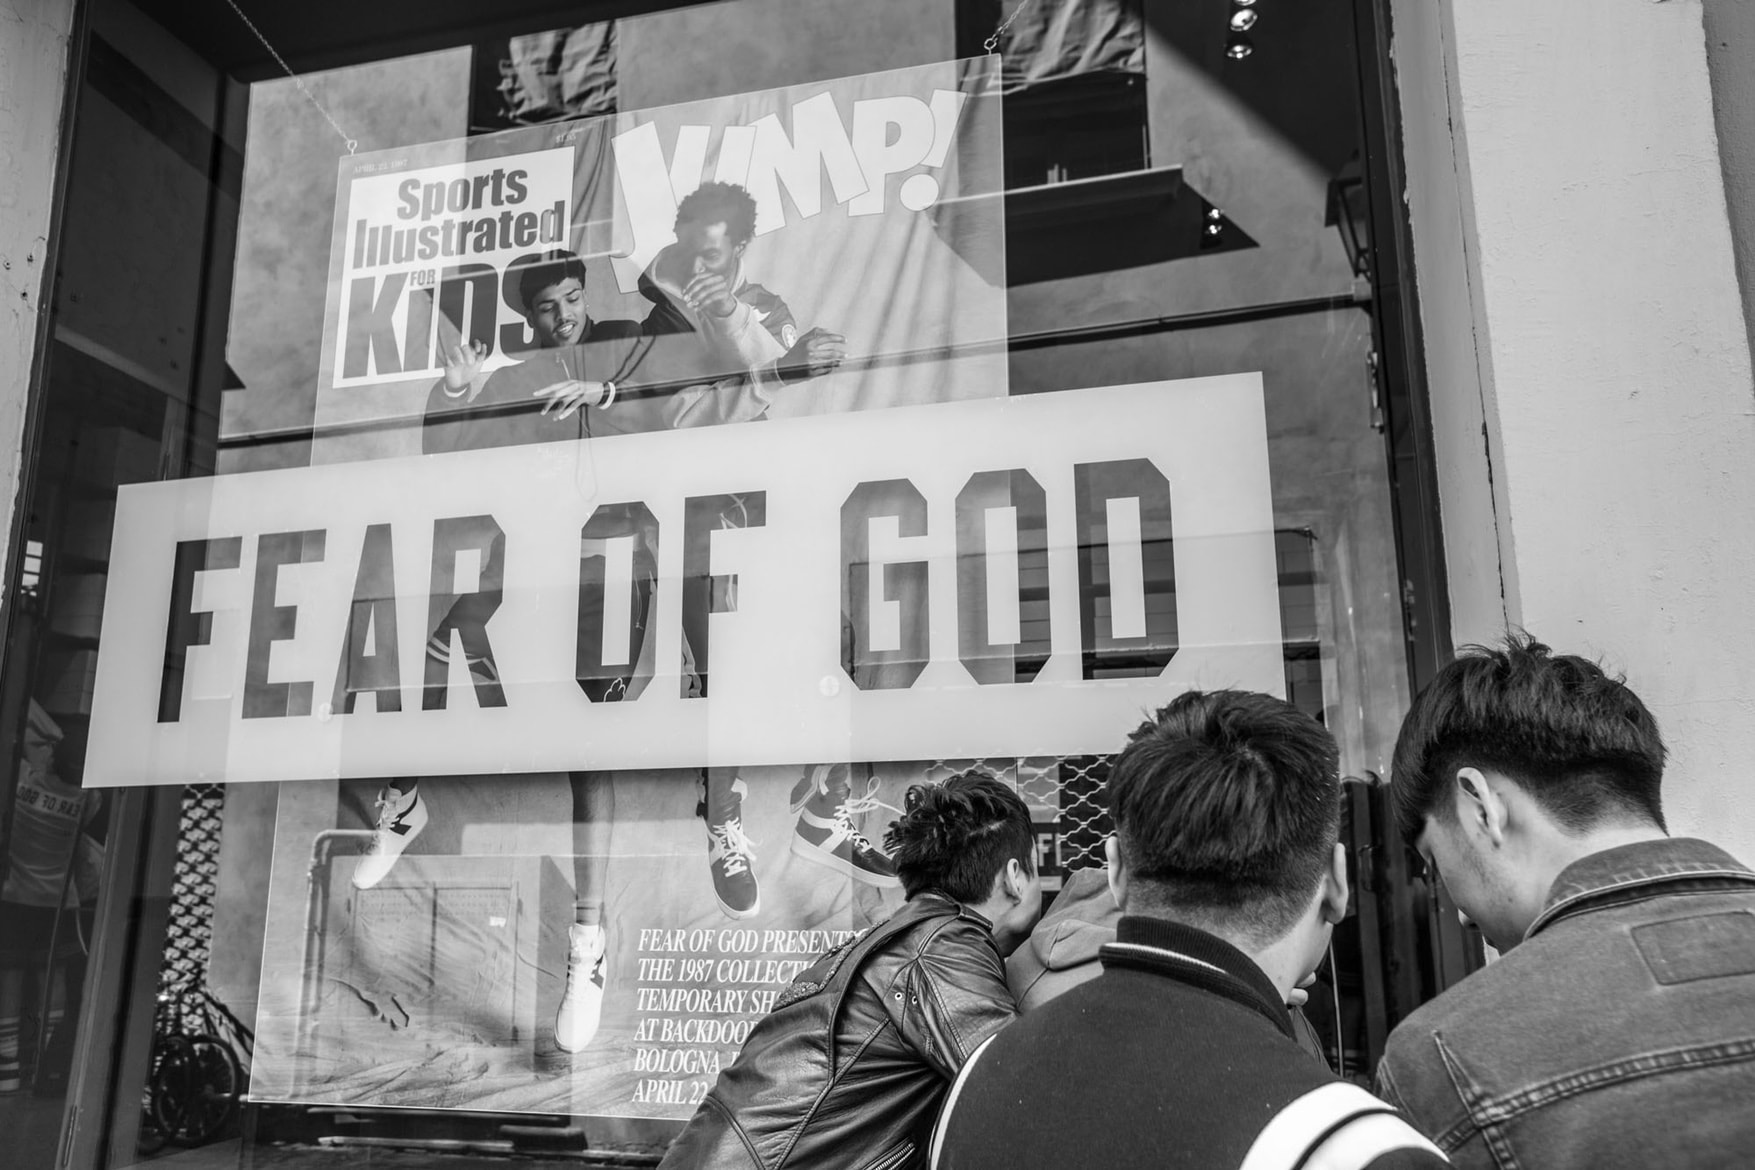 直擊 Fear of God 最新「1987」別注系列發售現場